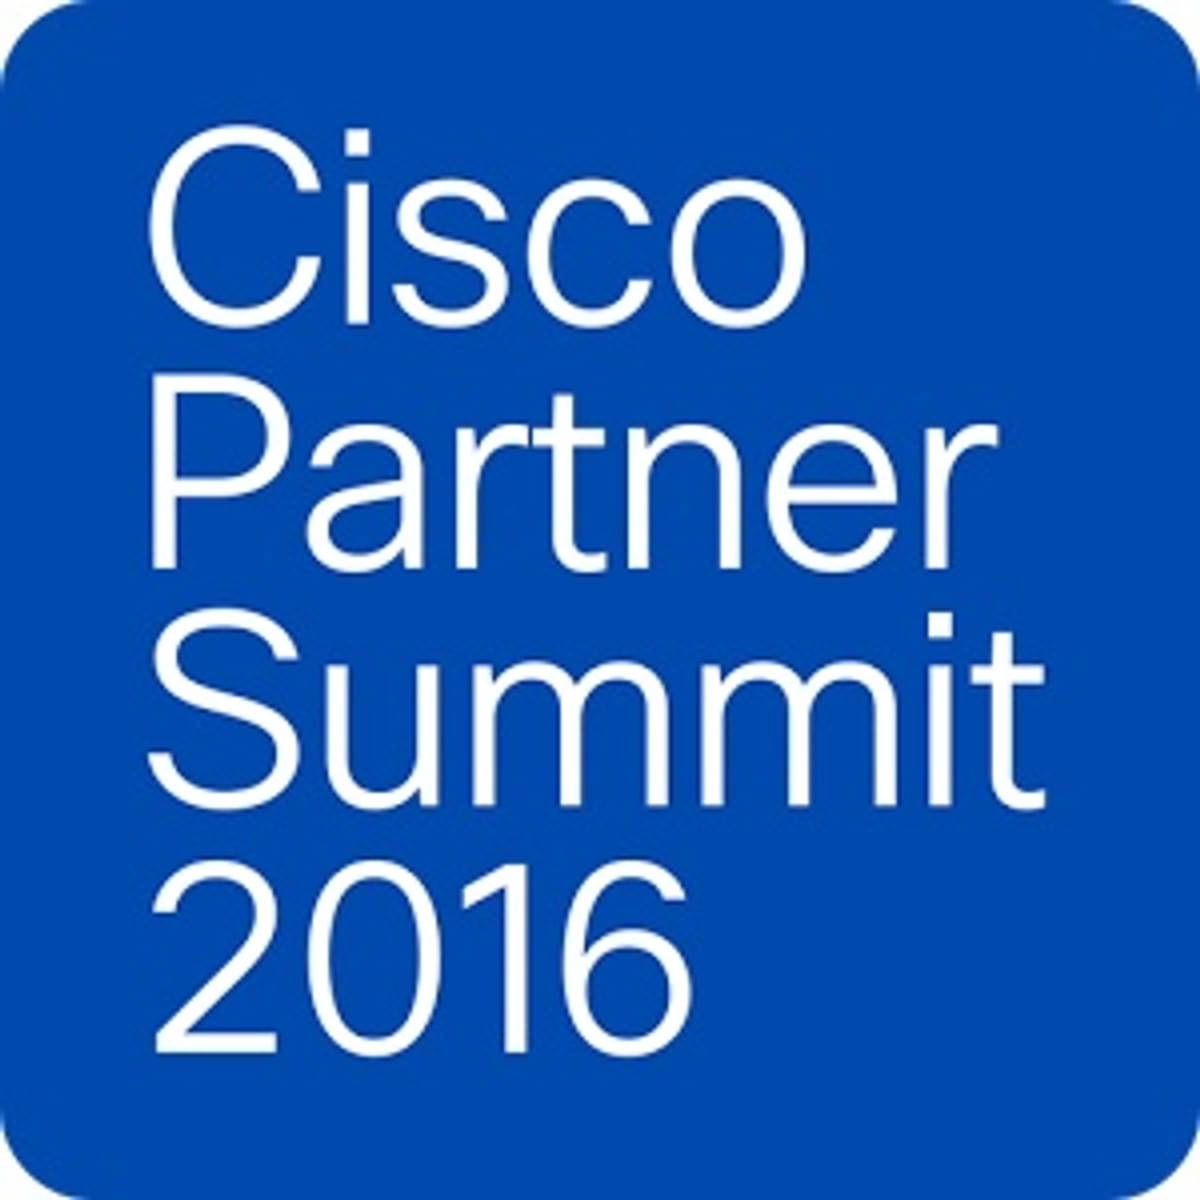 Cisco Partner Summit 2016 wordt ter plekke verslagen door Dutch IT-channel image